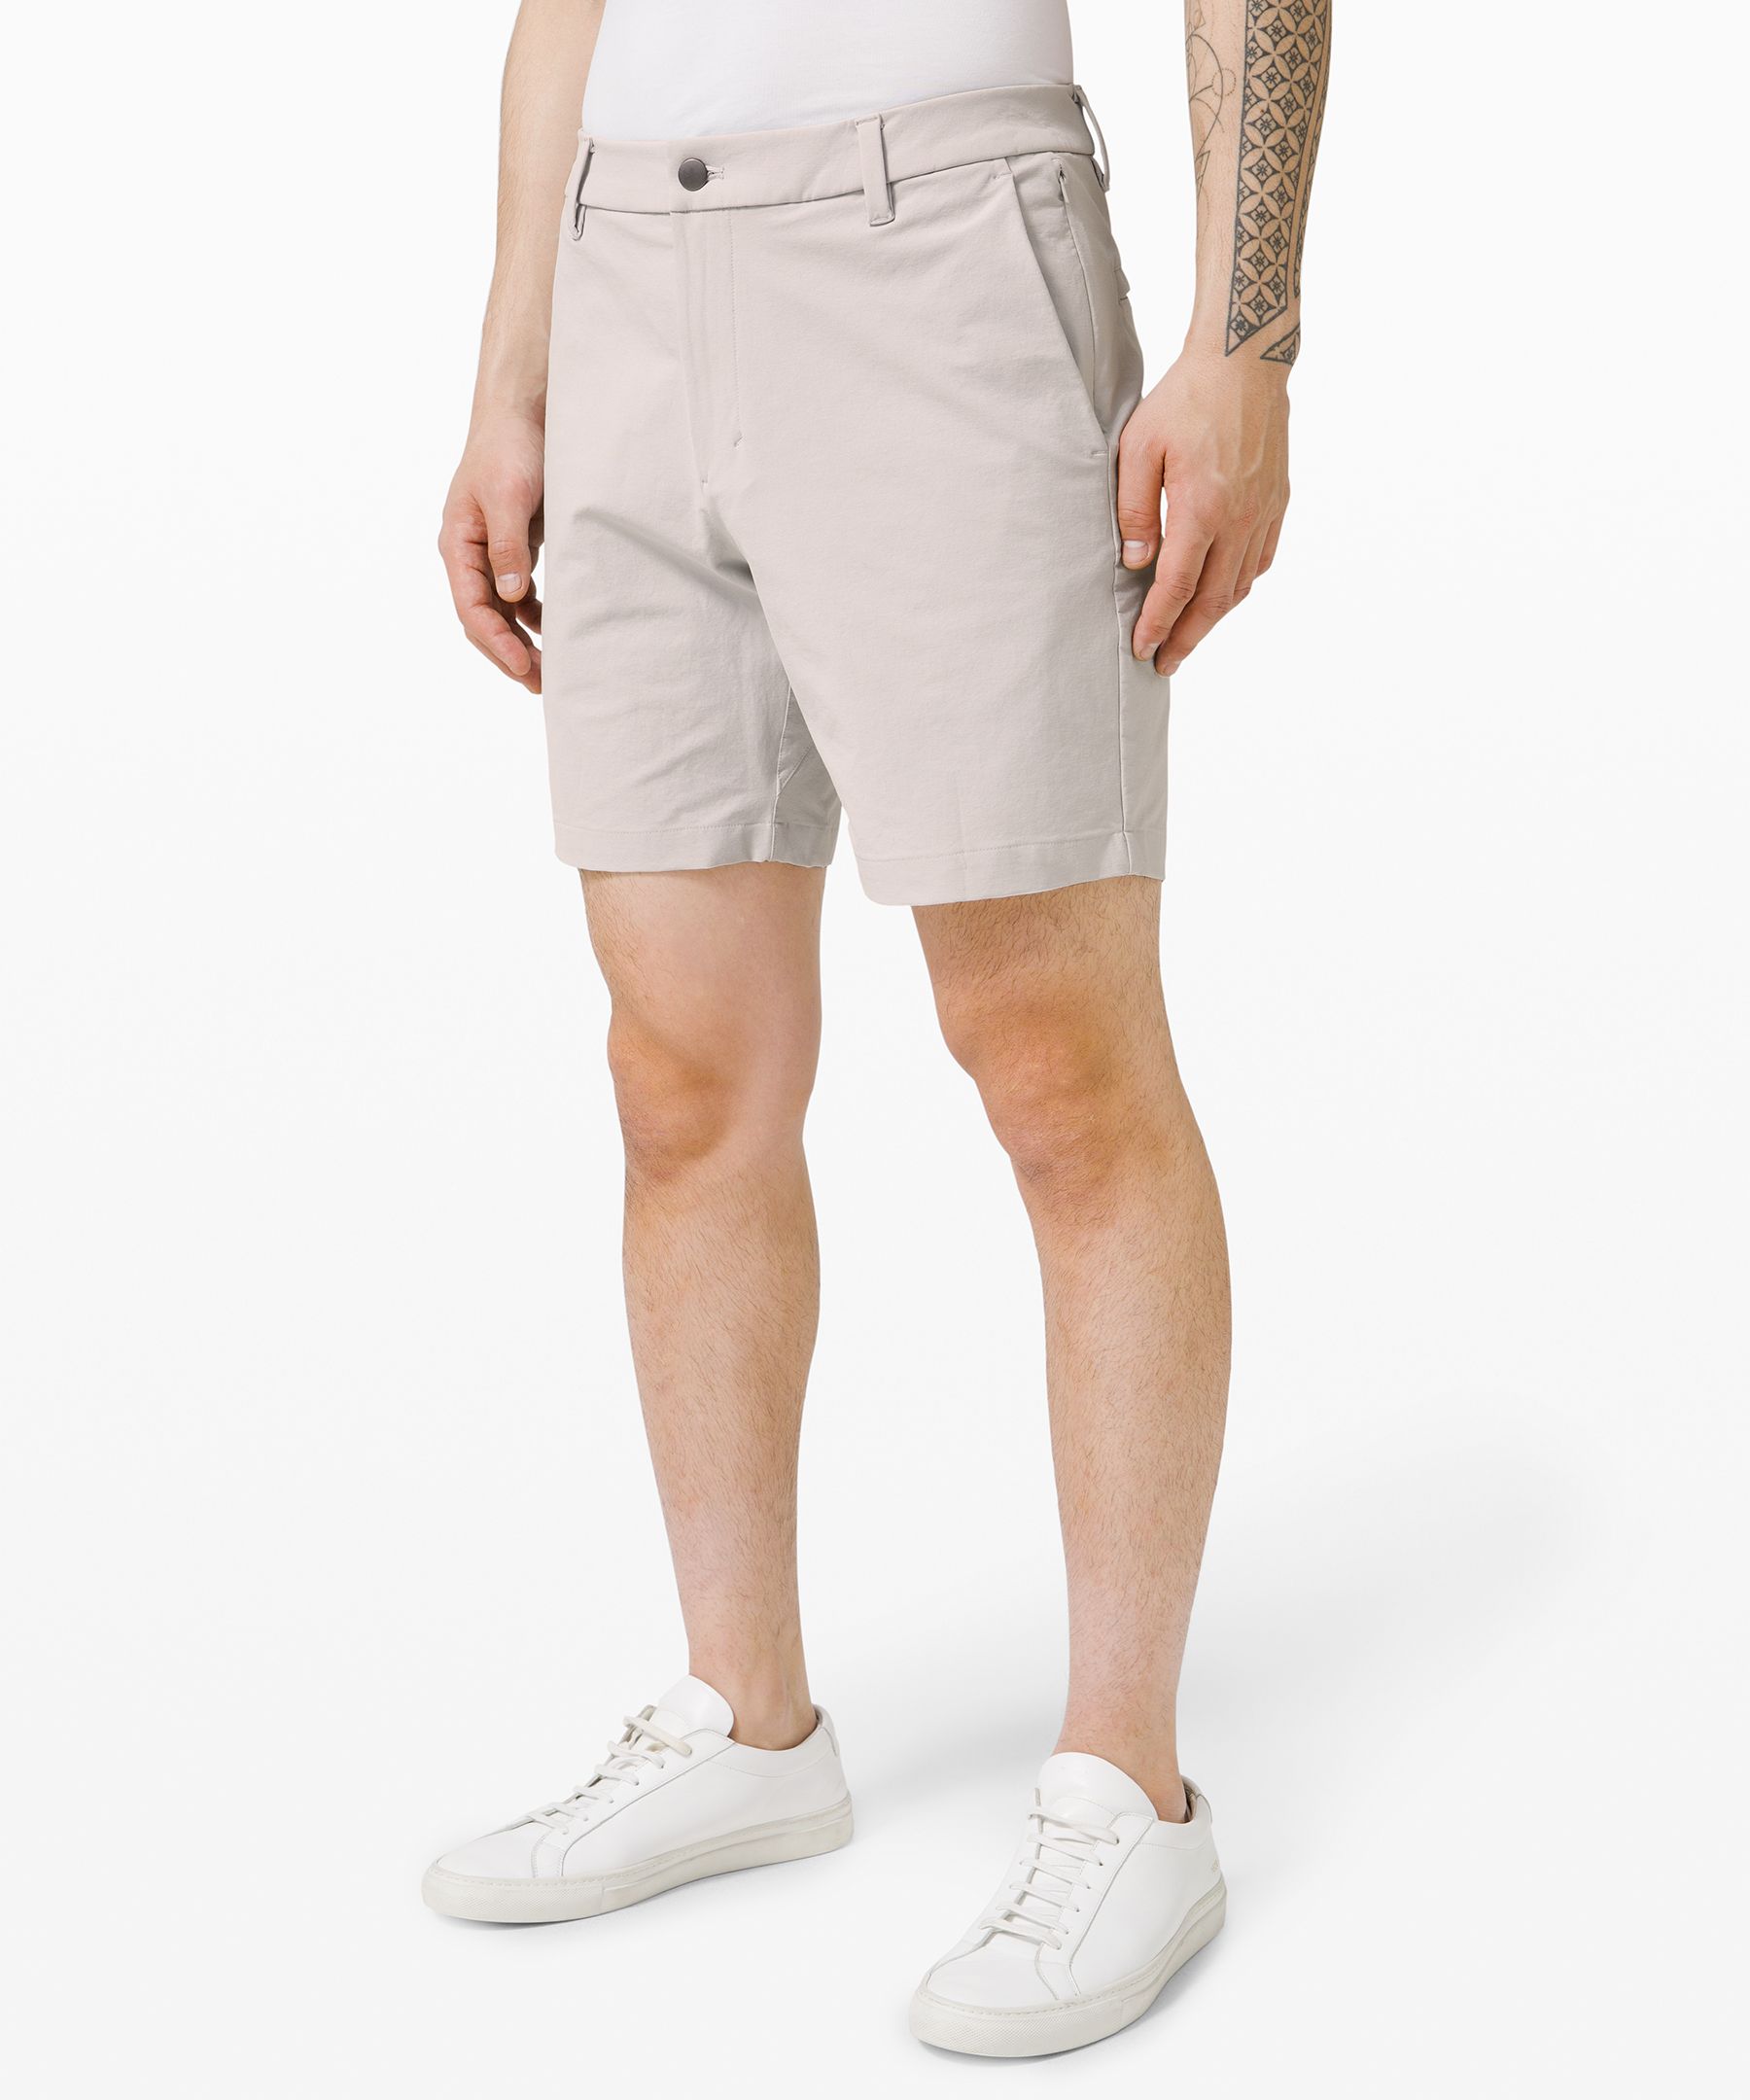 lululemon abc shorts